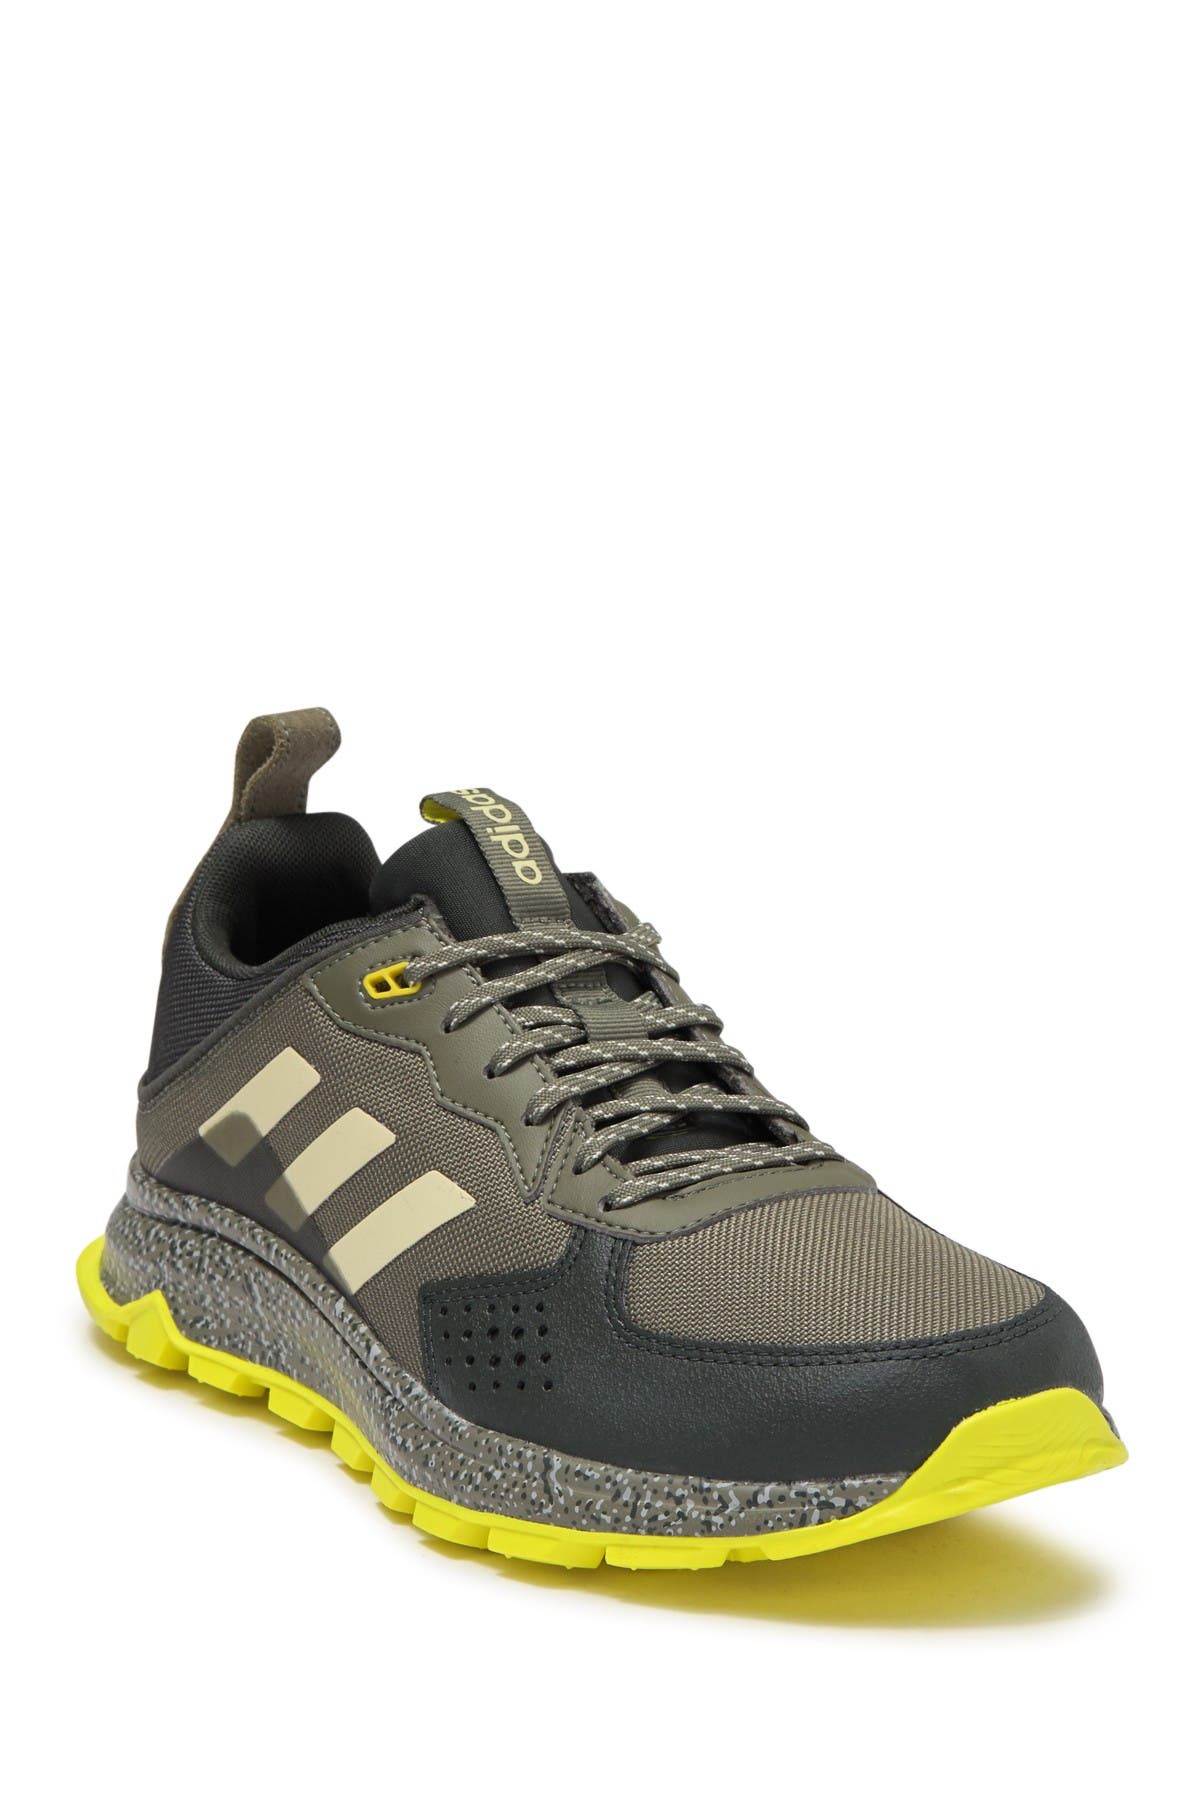 adidas response trail shoes